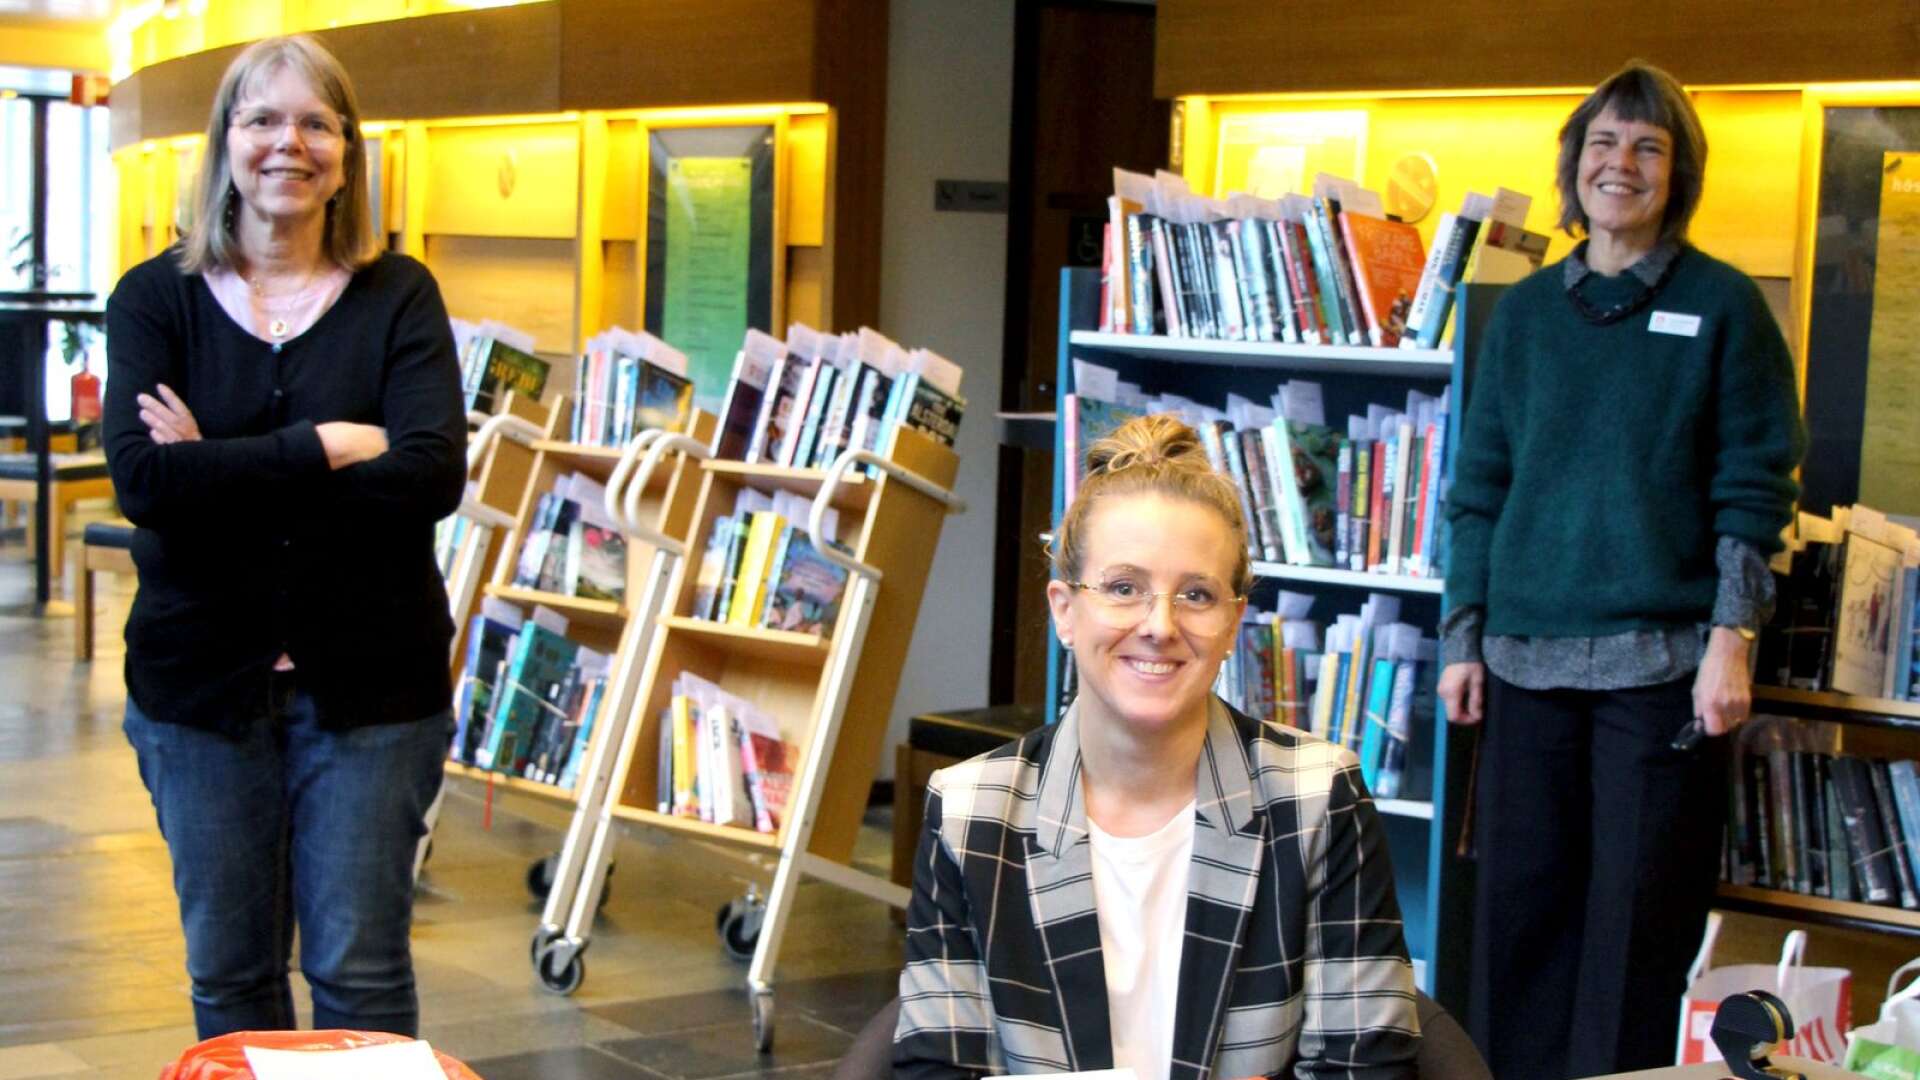 Bibliotekarie Lena Wellman, biblioteksassistent Carolina Tholin, och bibliotekschef Anna Gullstrand i teaterfoajén där utlämningen av böcker sker. Den som har ringt och aviserat sin ankomst får sin beställning färdigpackad i en röd påse.